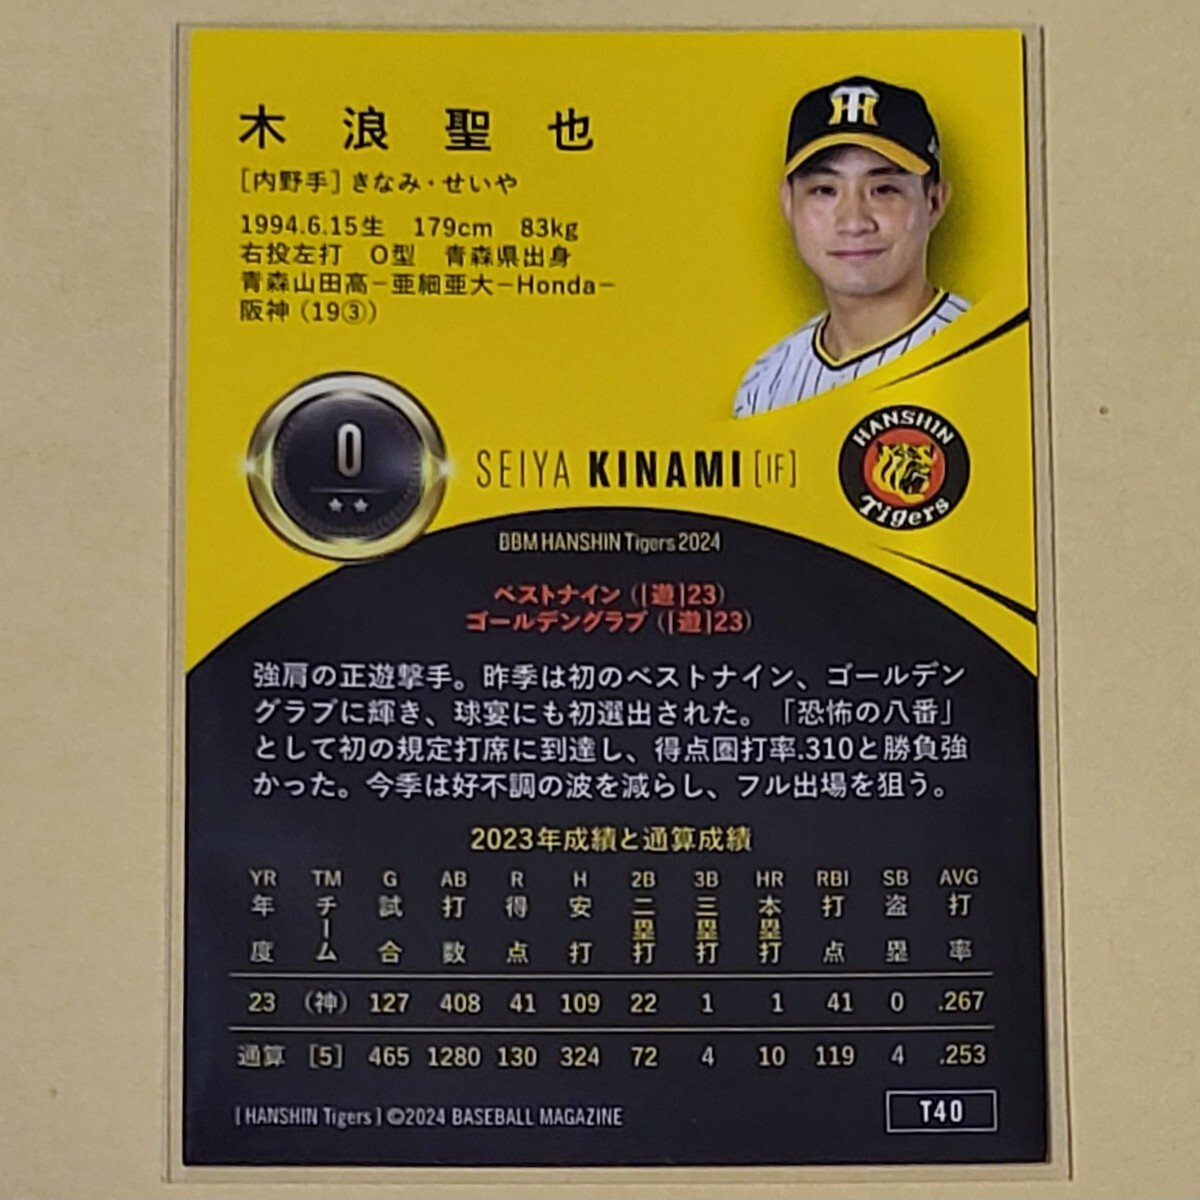 [T40] 木浪聖也 BBM 2024 Tigers 阪神タイガース ベースボールカード レギュラーカード_画像2